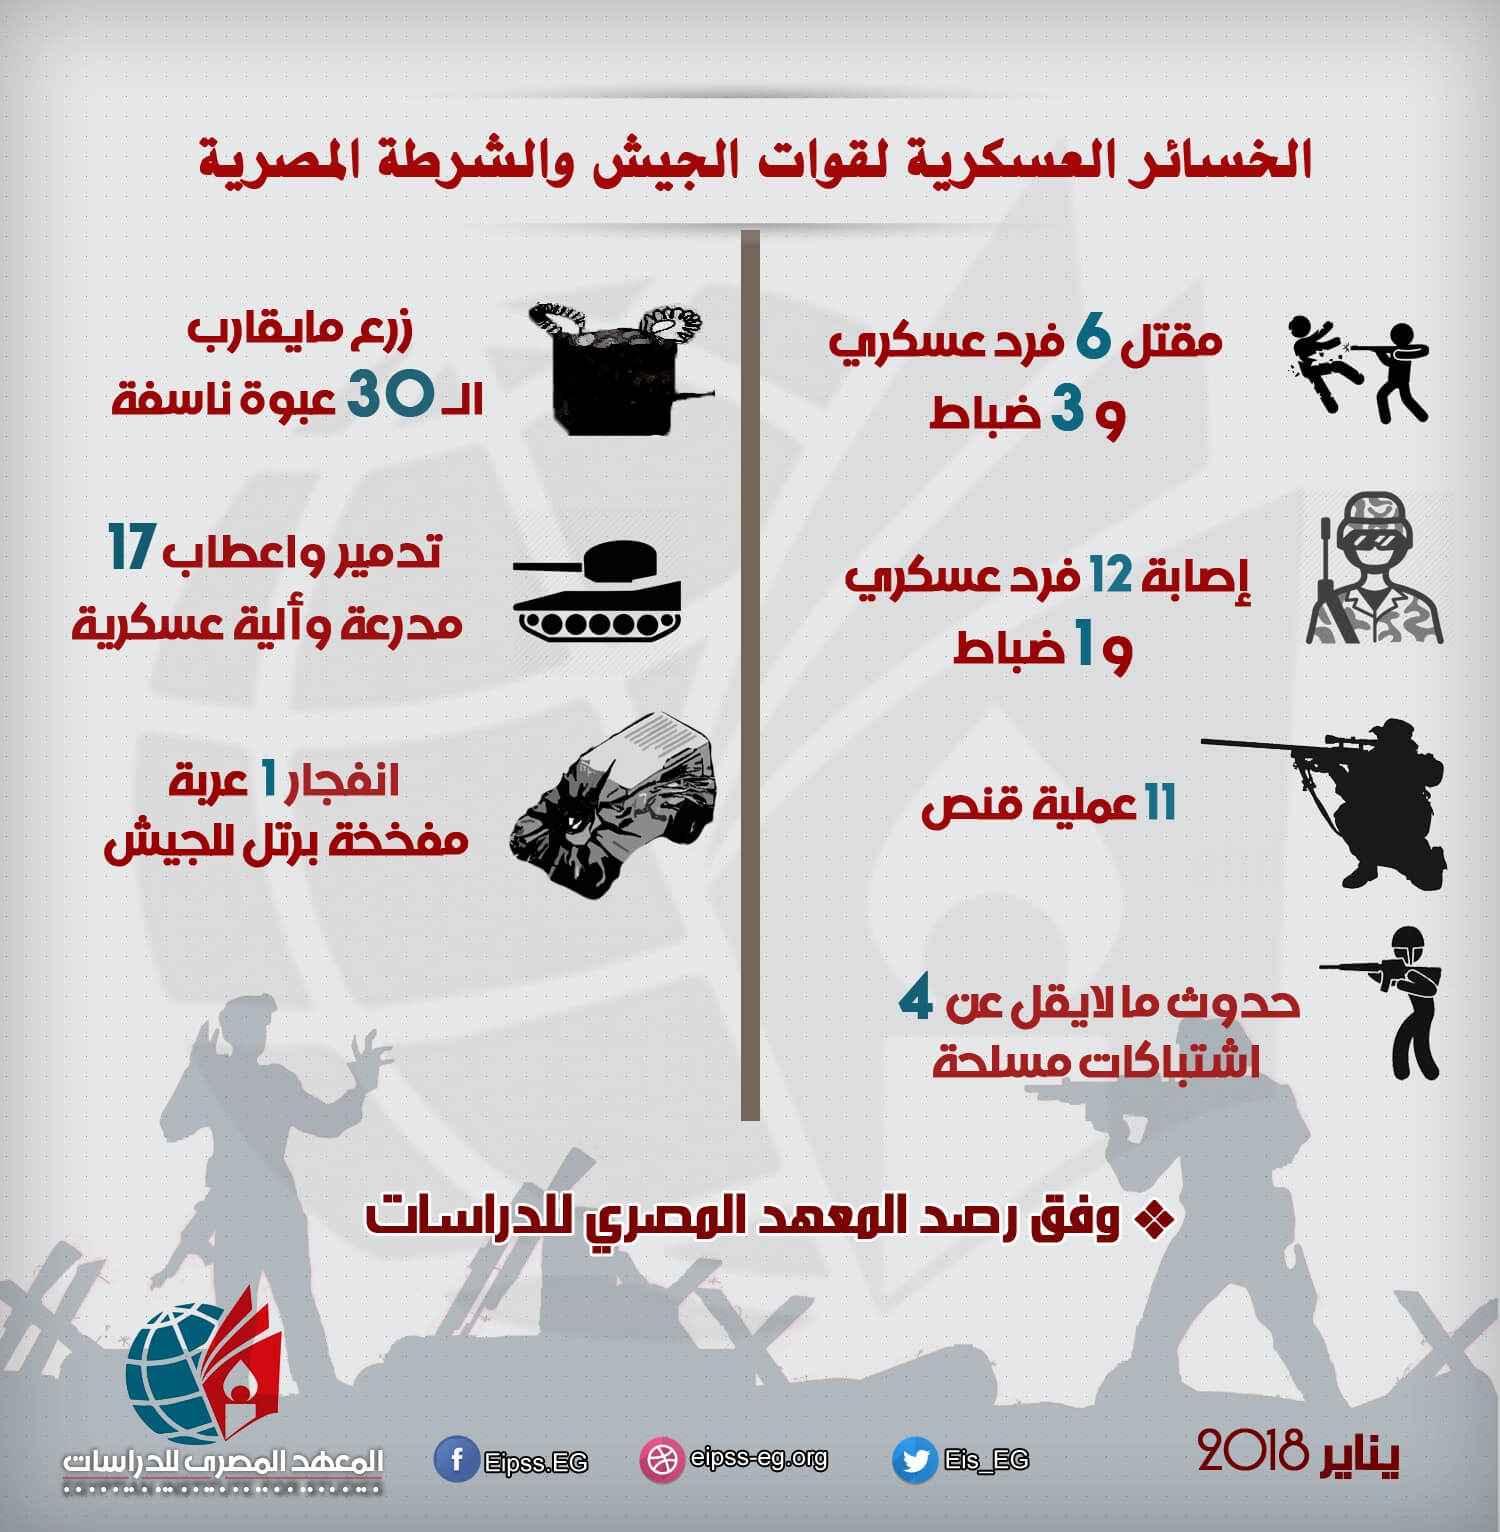 خسائر الجيش والشرطة في سيناء